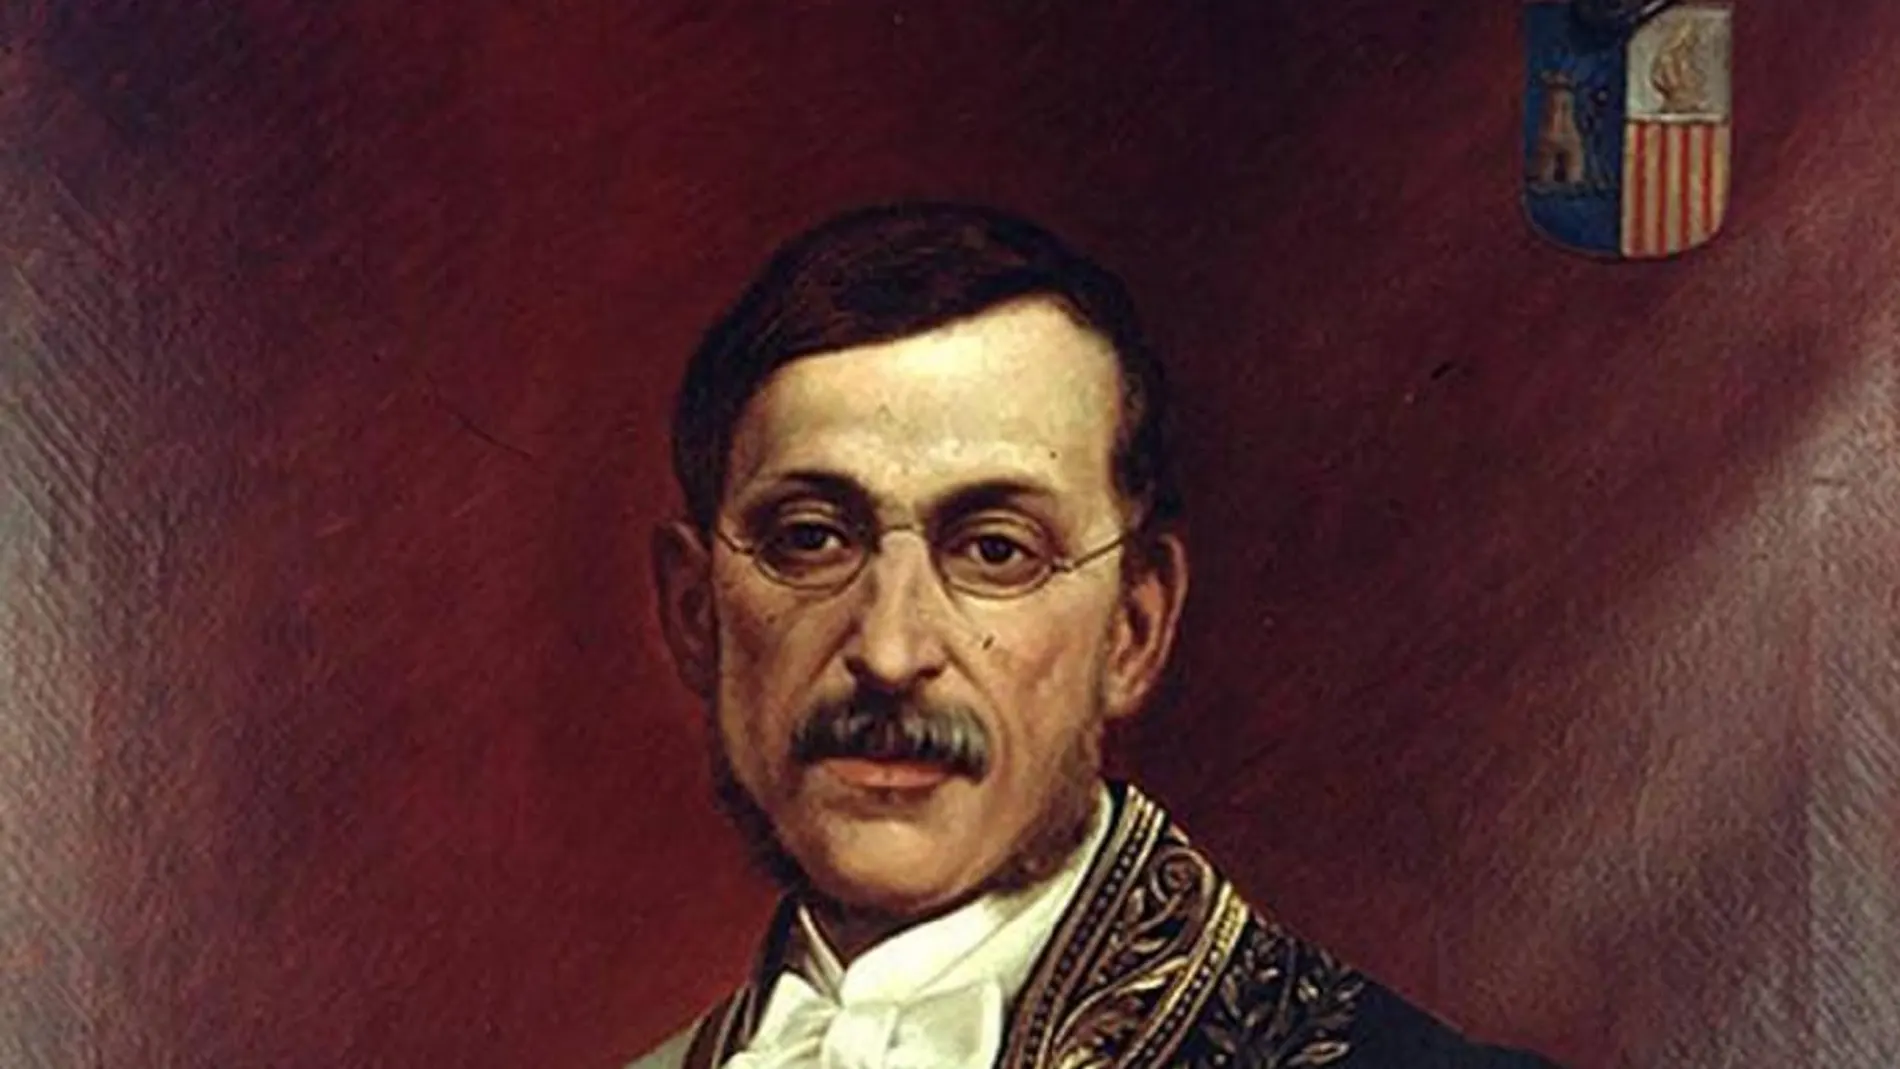 Un retrato de Sinibaldo de Mas, de gran realismo, pintado por Tomás Moragas